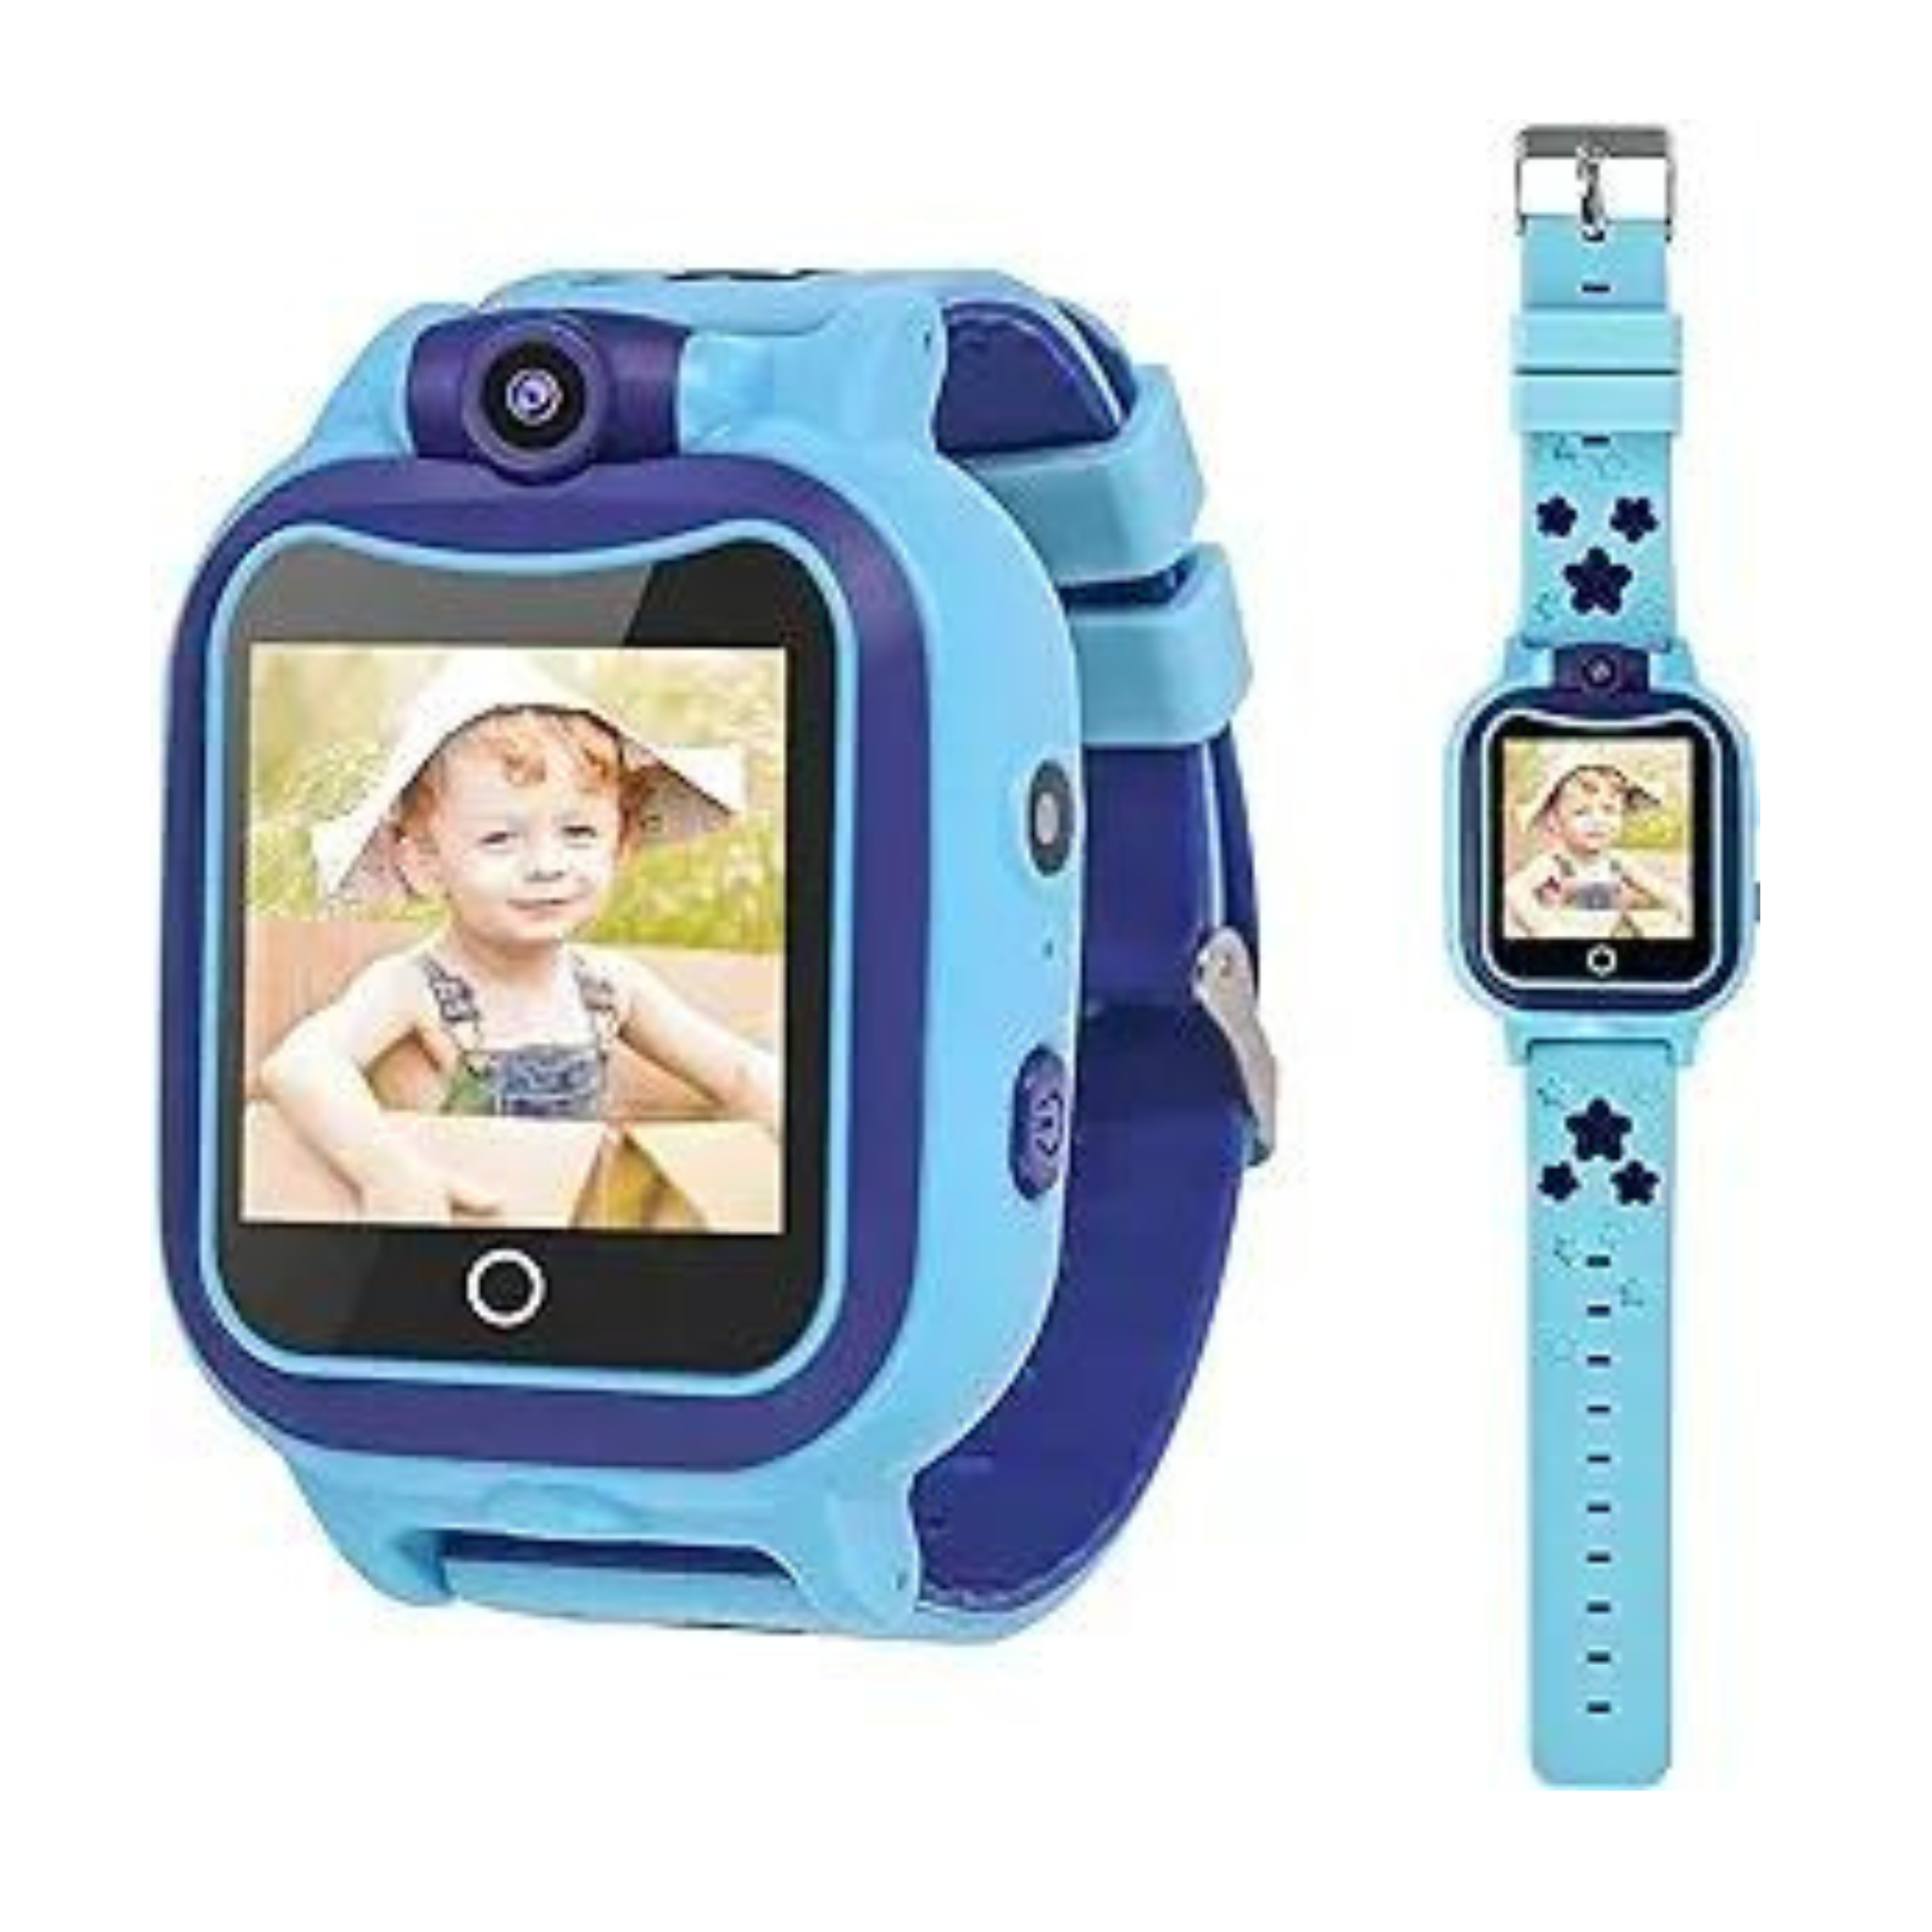 Kids Touchscreen MP3 Music Player Watch